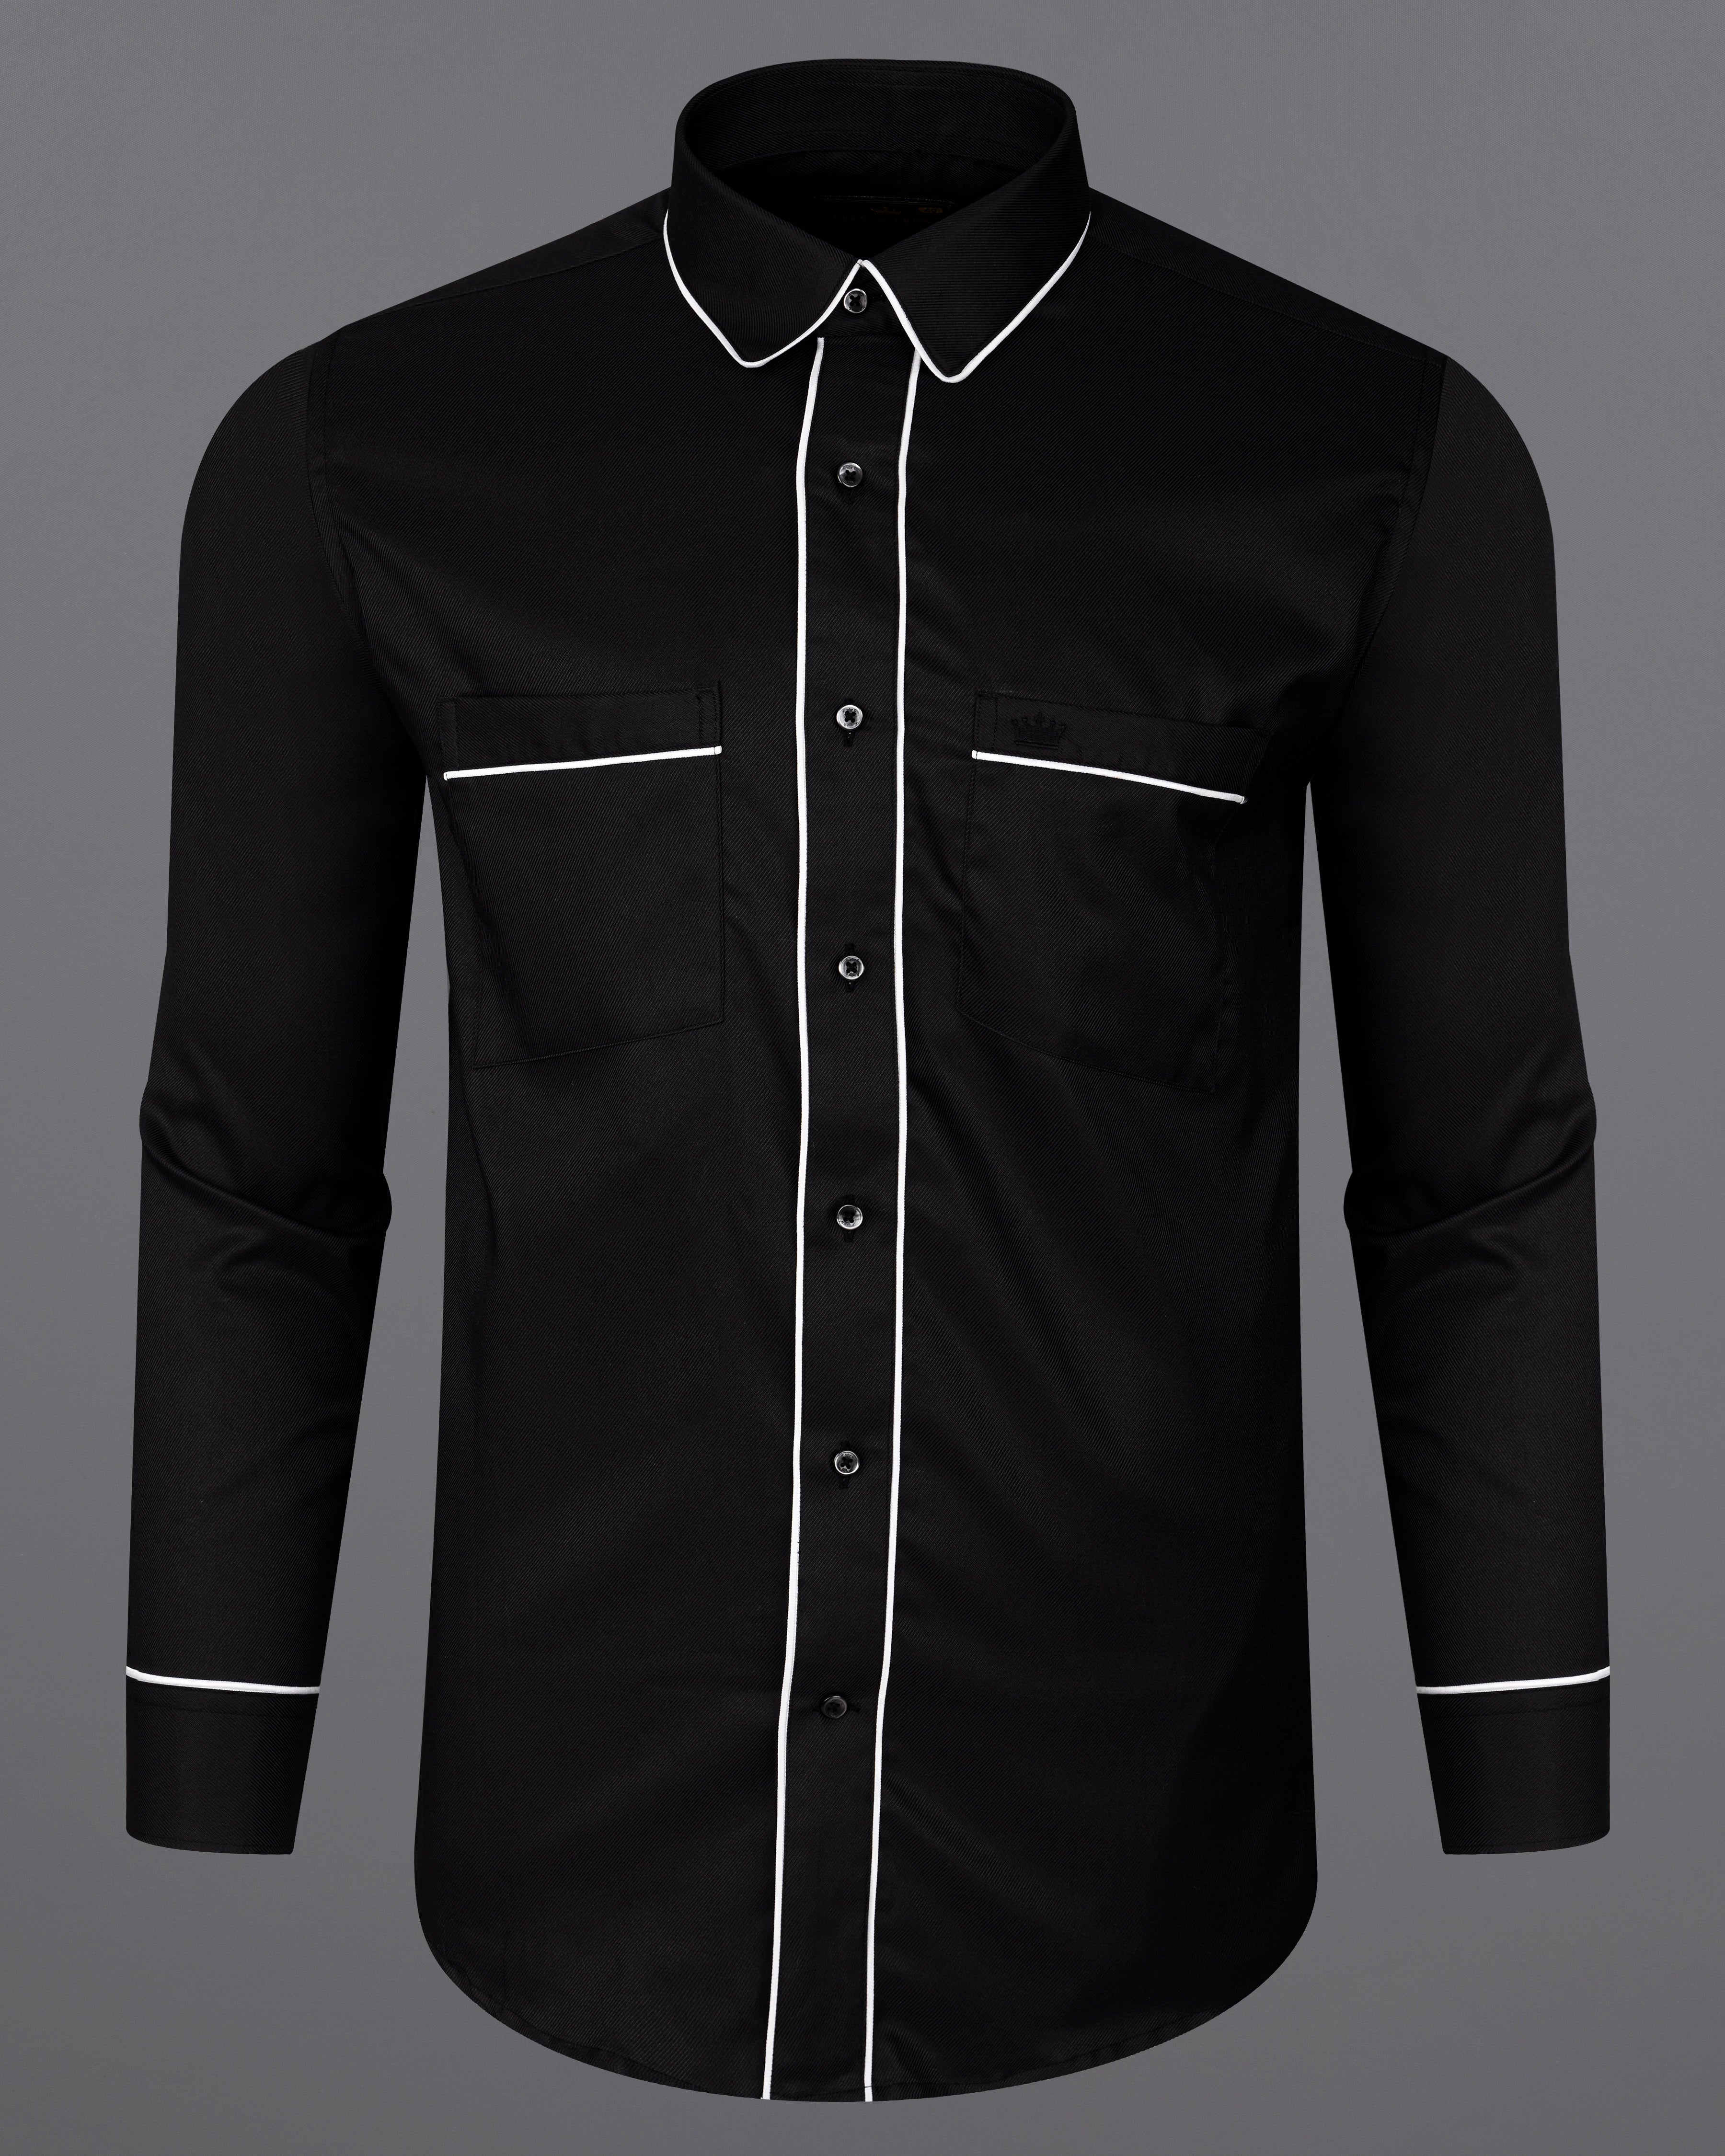 Formal Black Textured Shirt - Denver